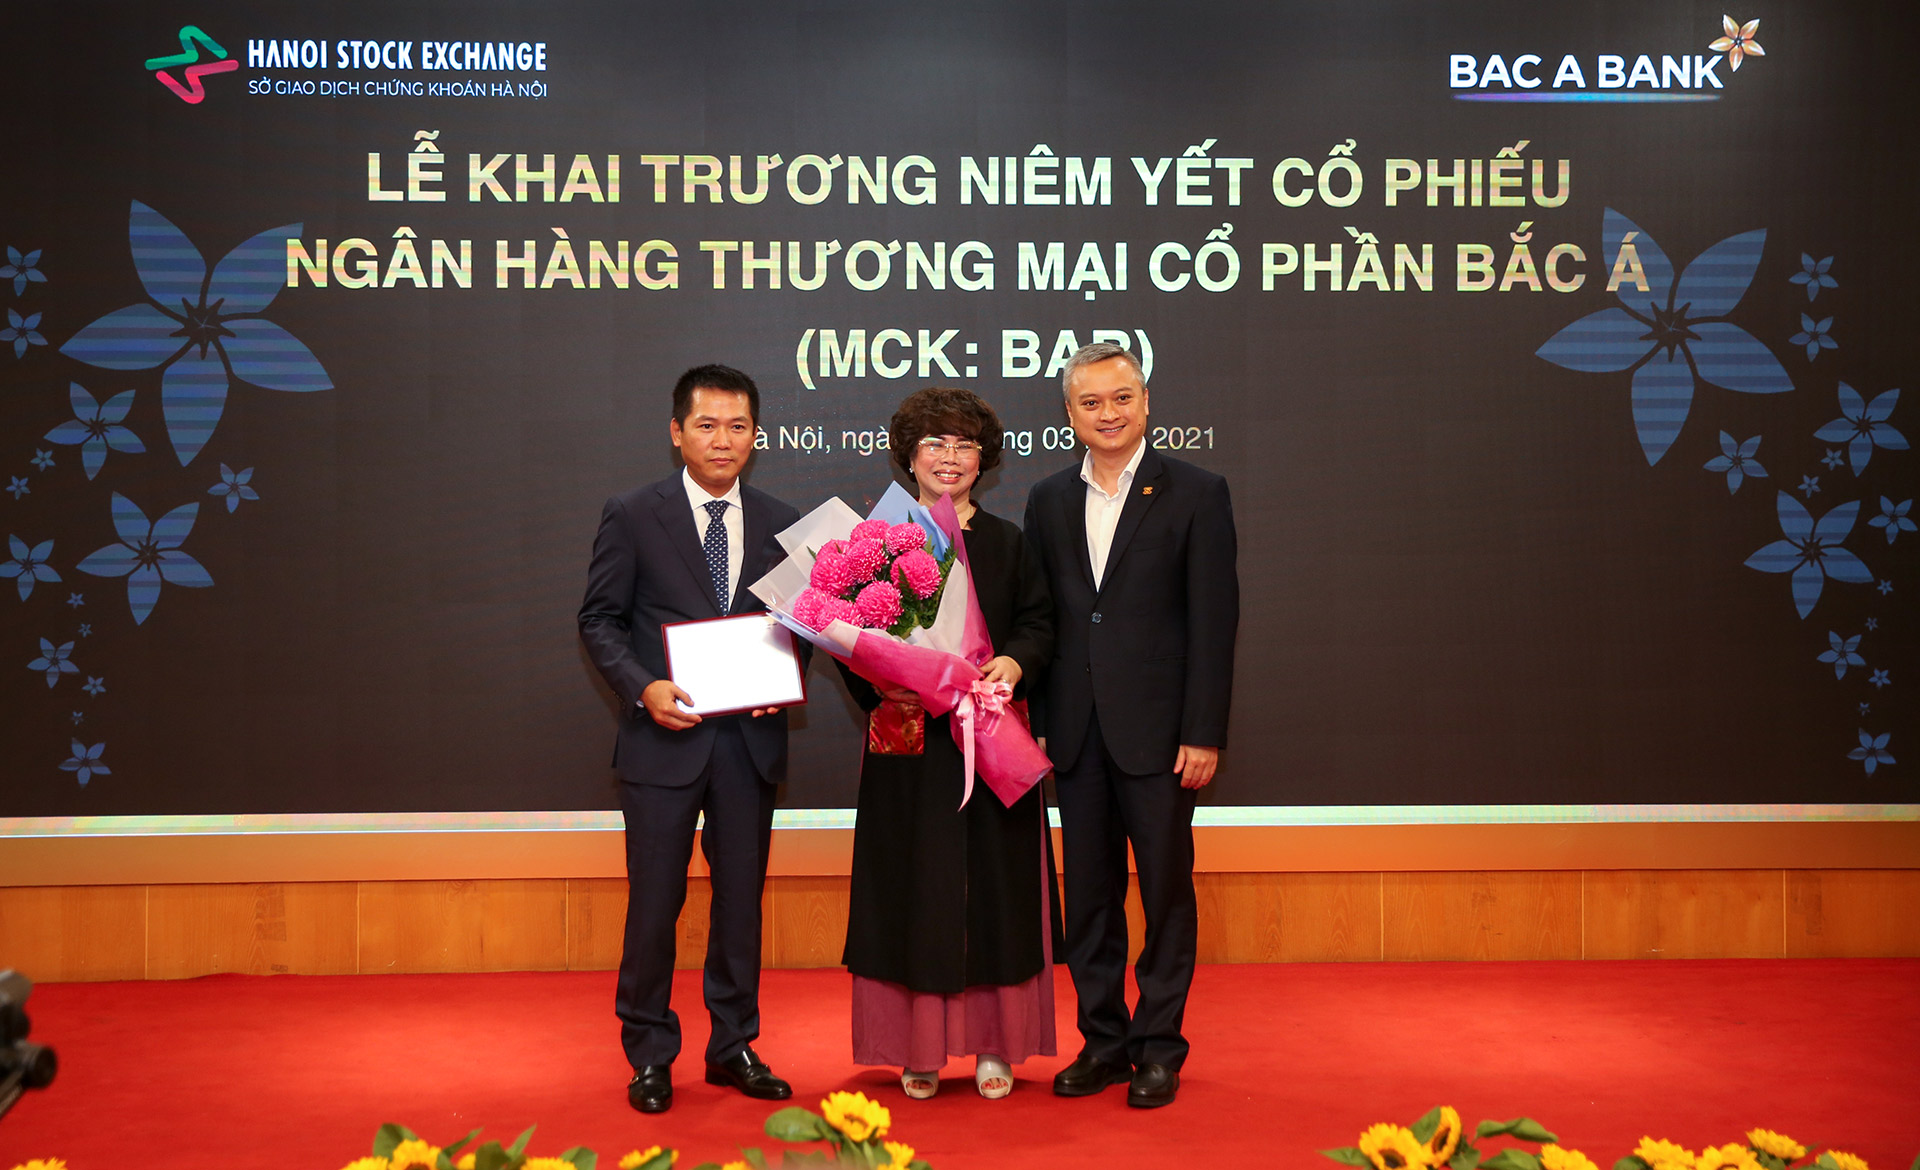 Đại diện BAC A BANK nhận bảng chứng nhận niêm yết cổ phiếu và hoa chúc mừng từ Sở GDCK Hà Nội.